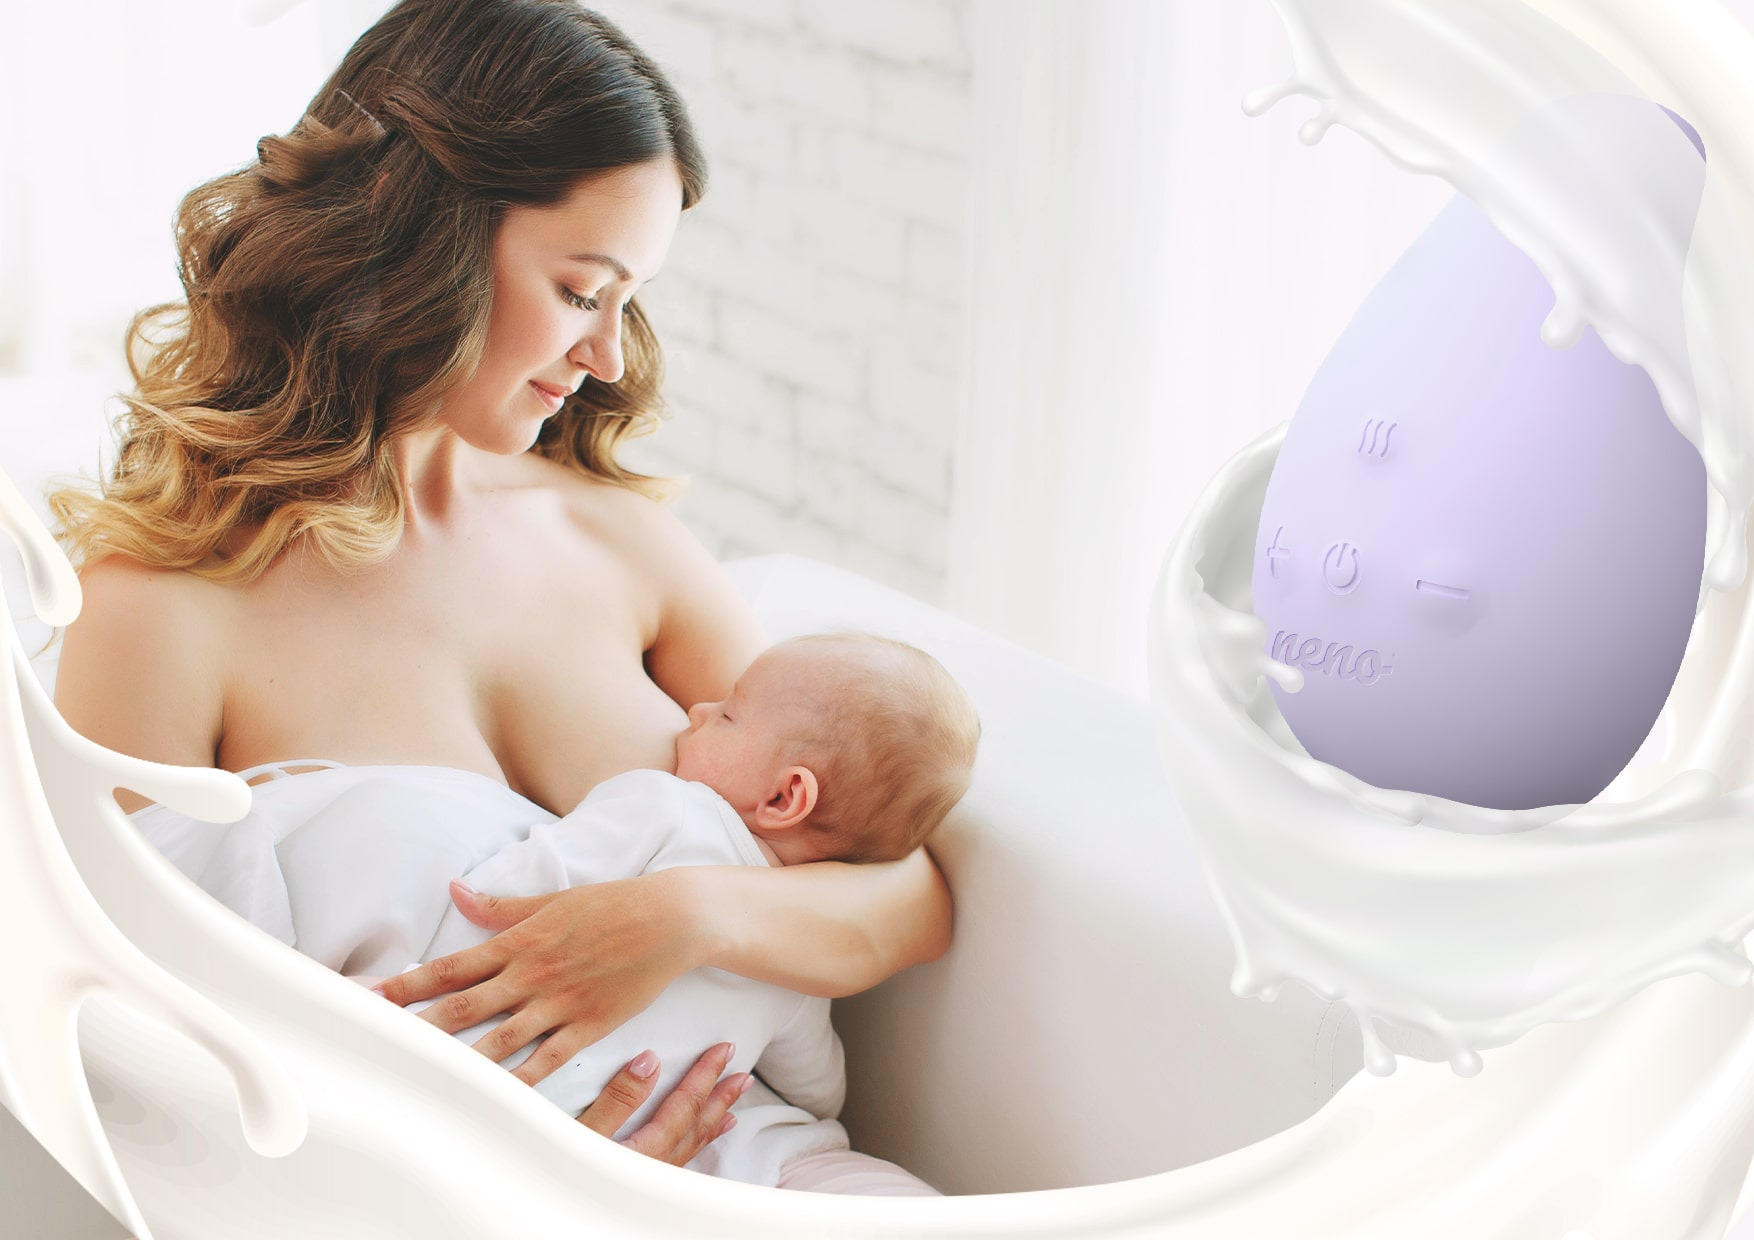 woman breastfeeding a baby